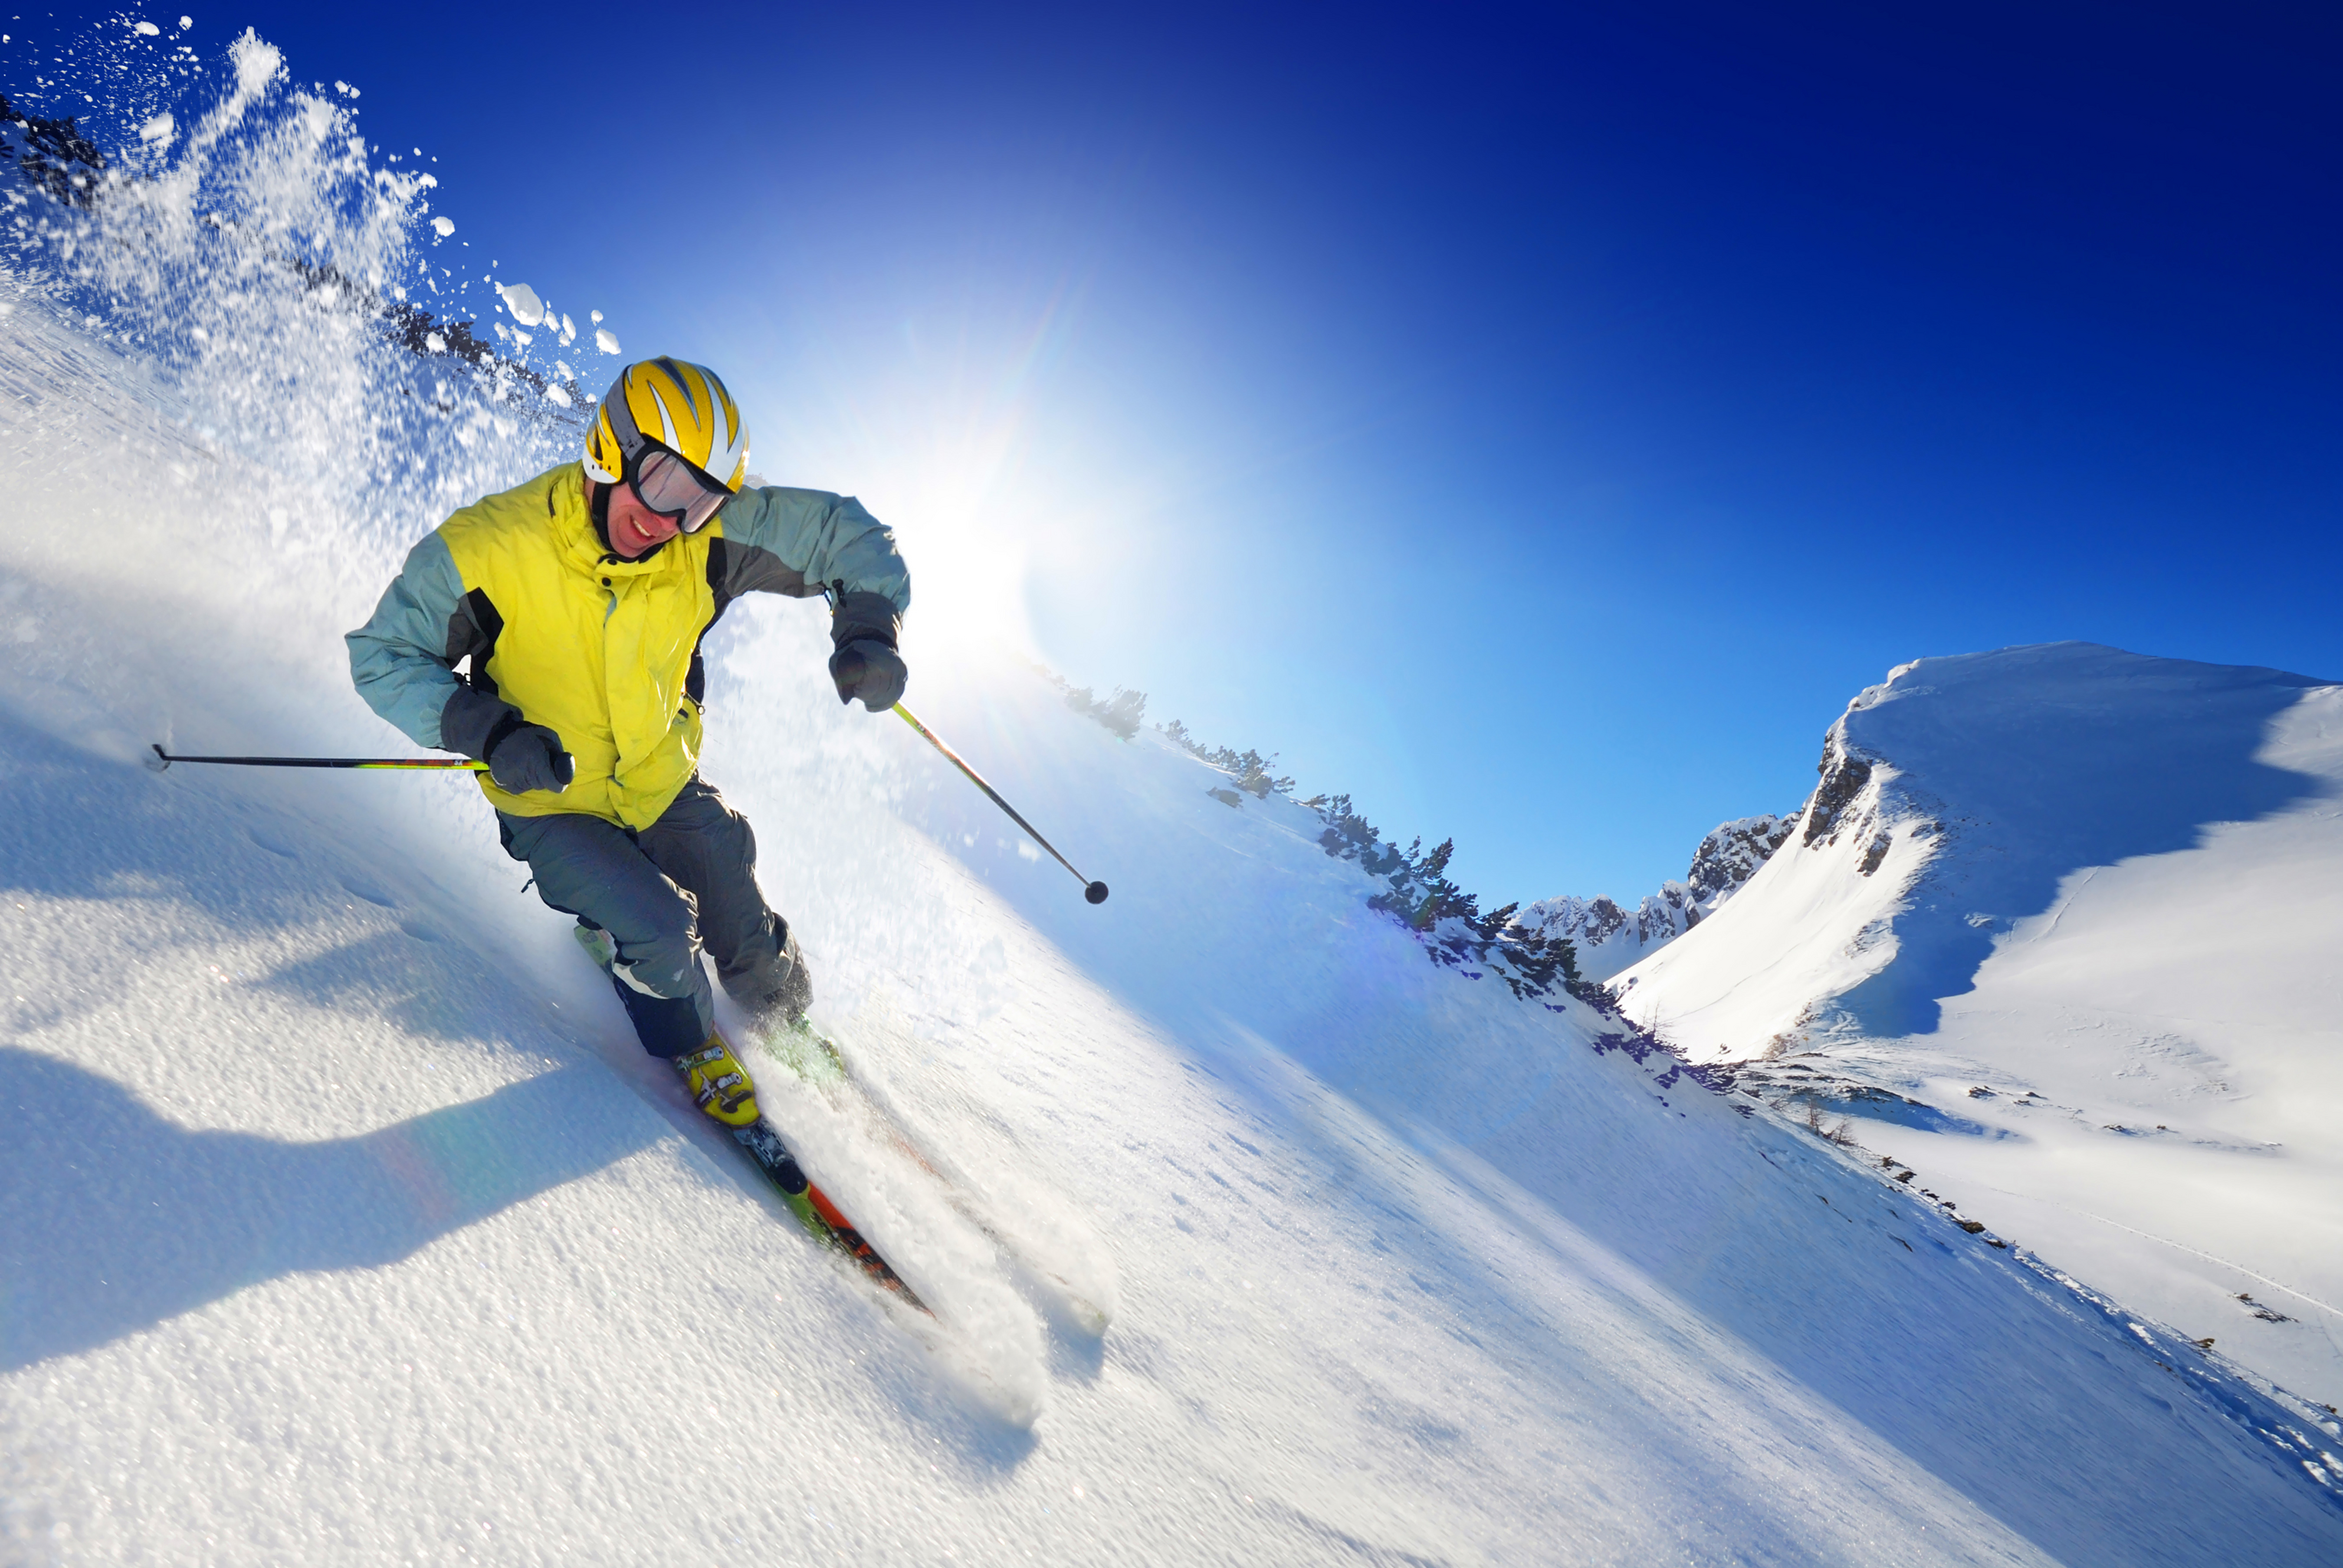 Skiing where. Цахкадзор фрирайд. Банско горнолыжник. Зимний спорт.